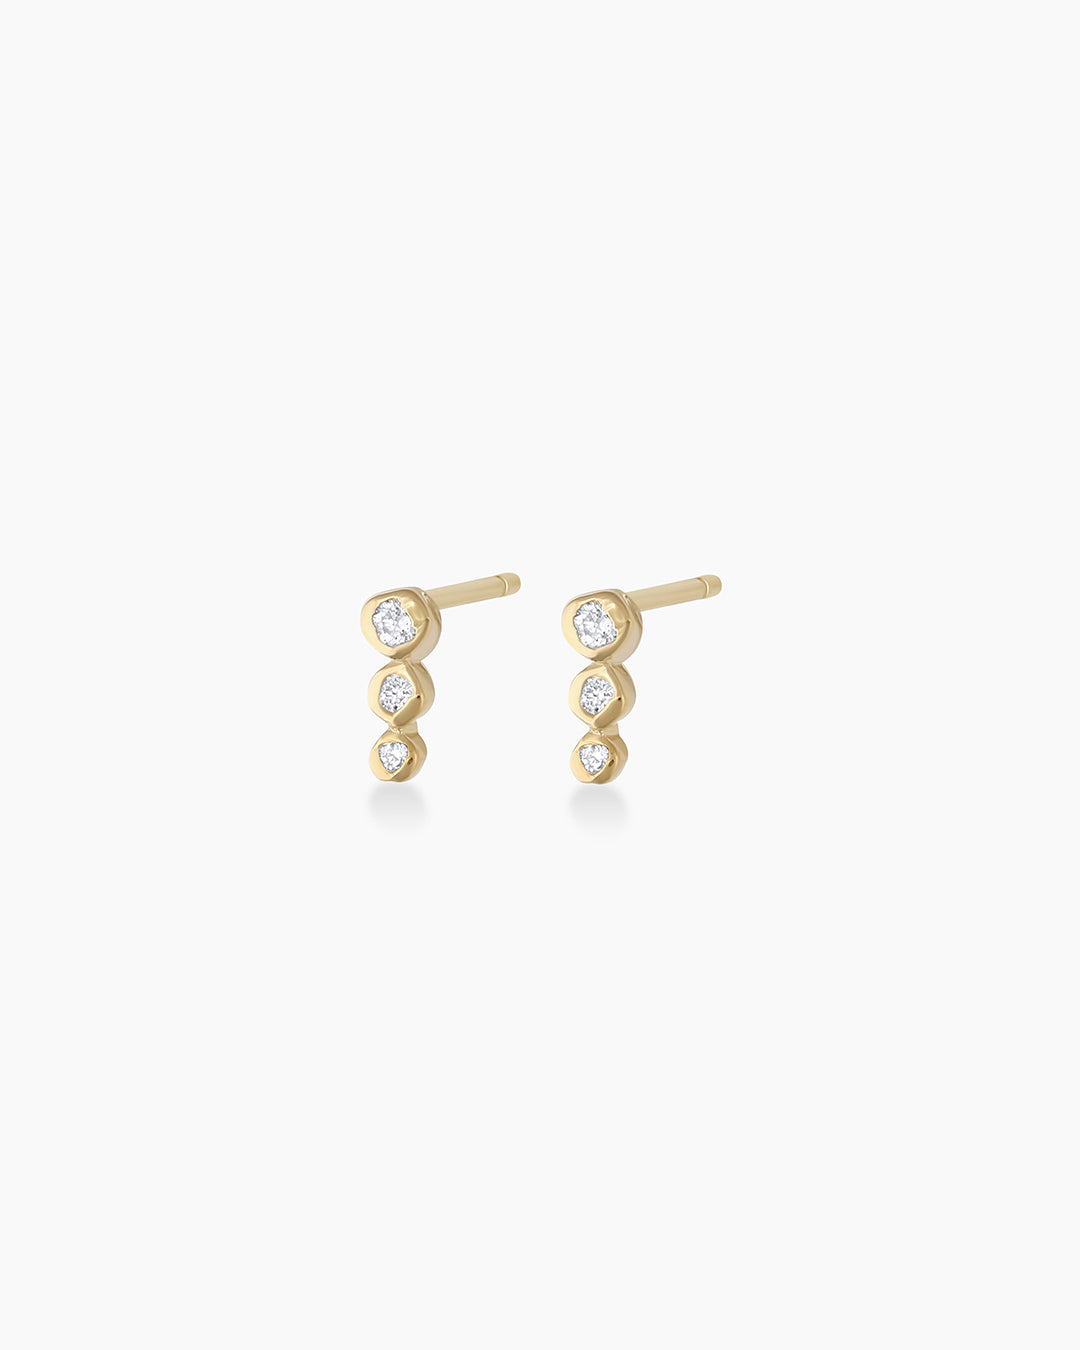 Newport Threaded Flat Back Stud Earring in 14K Solid Gold/Pair, Women's by Gorjana